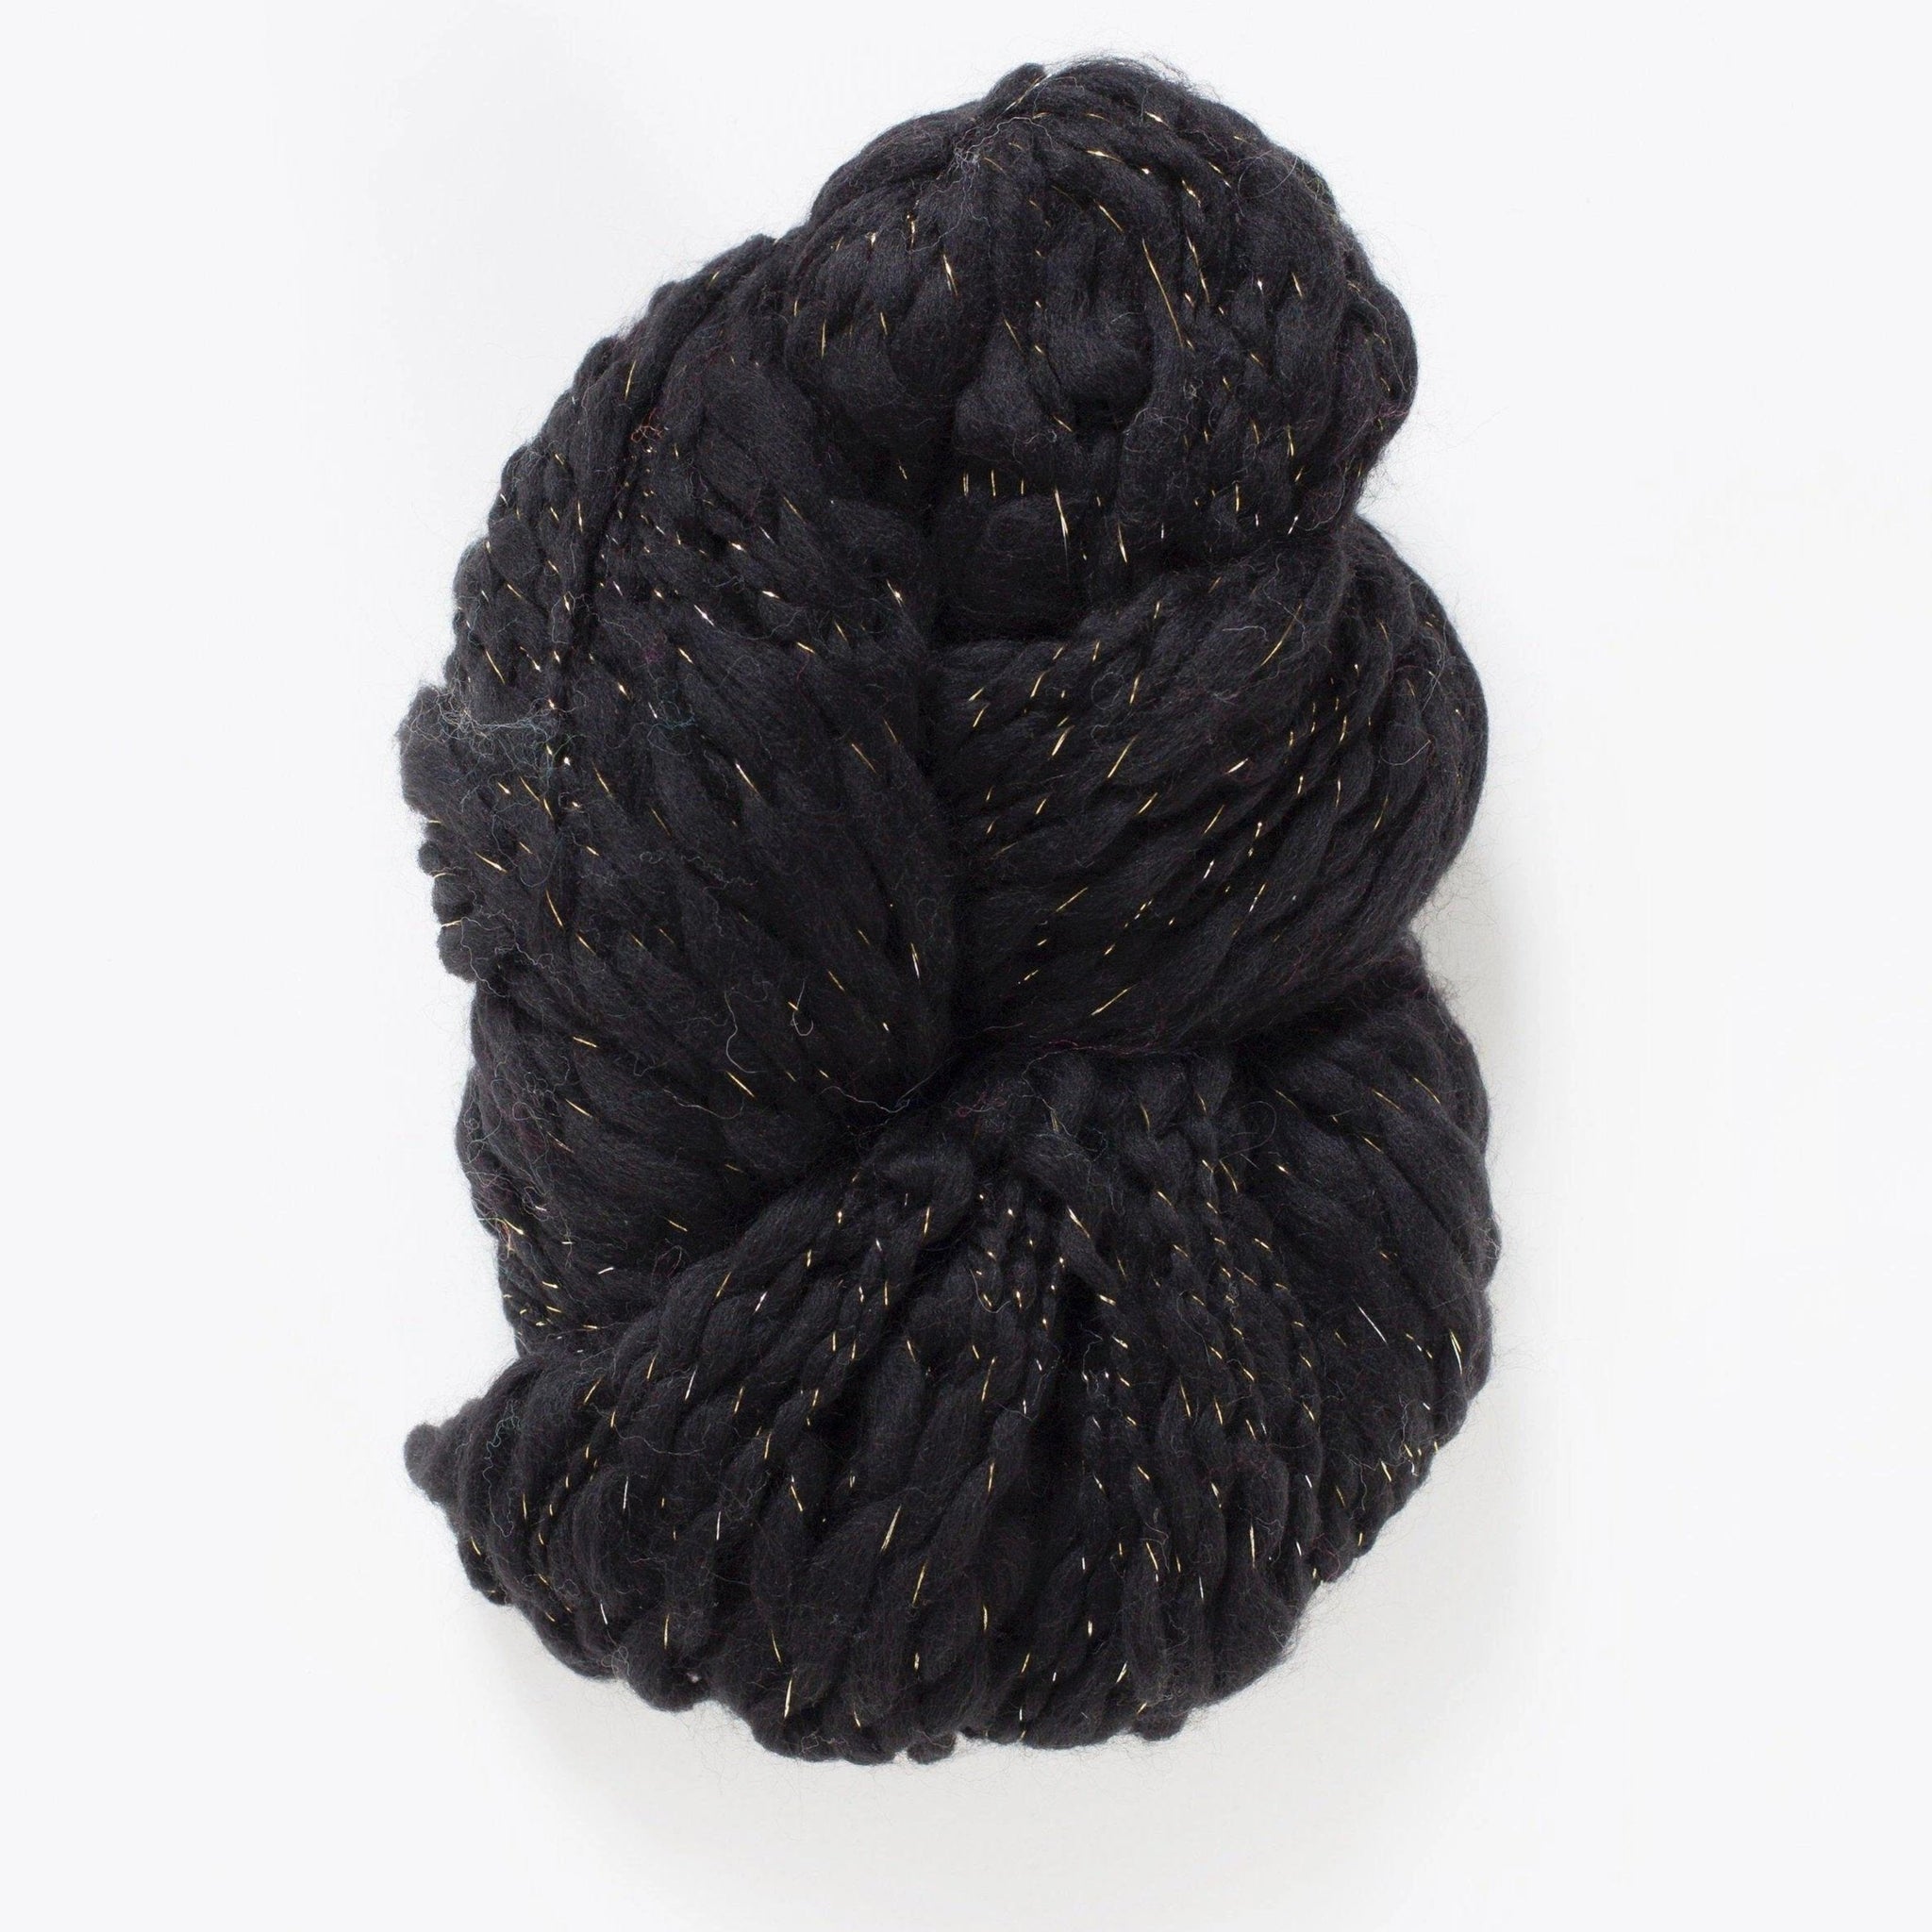 Knit Collage - Spun Cloud - Black Onyx - gatherhereonline.com